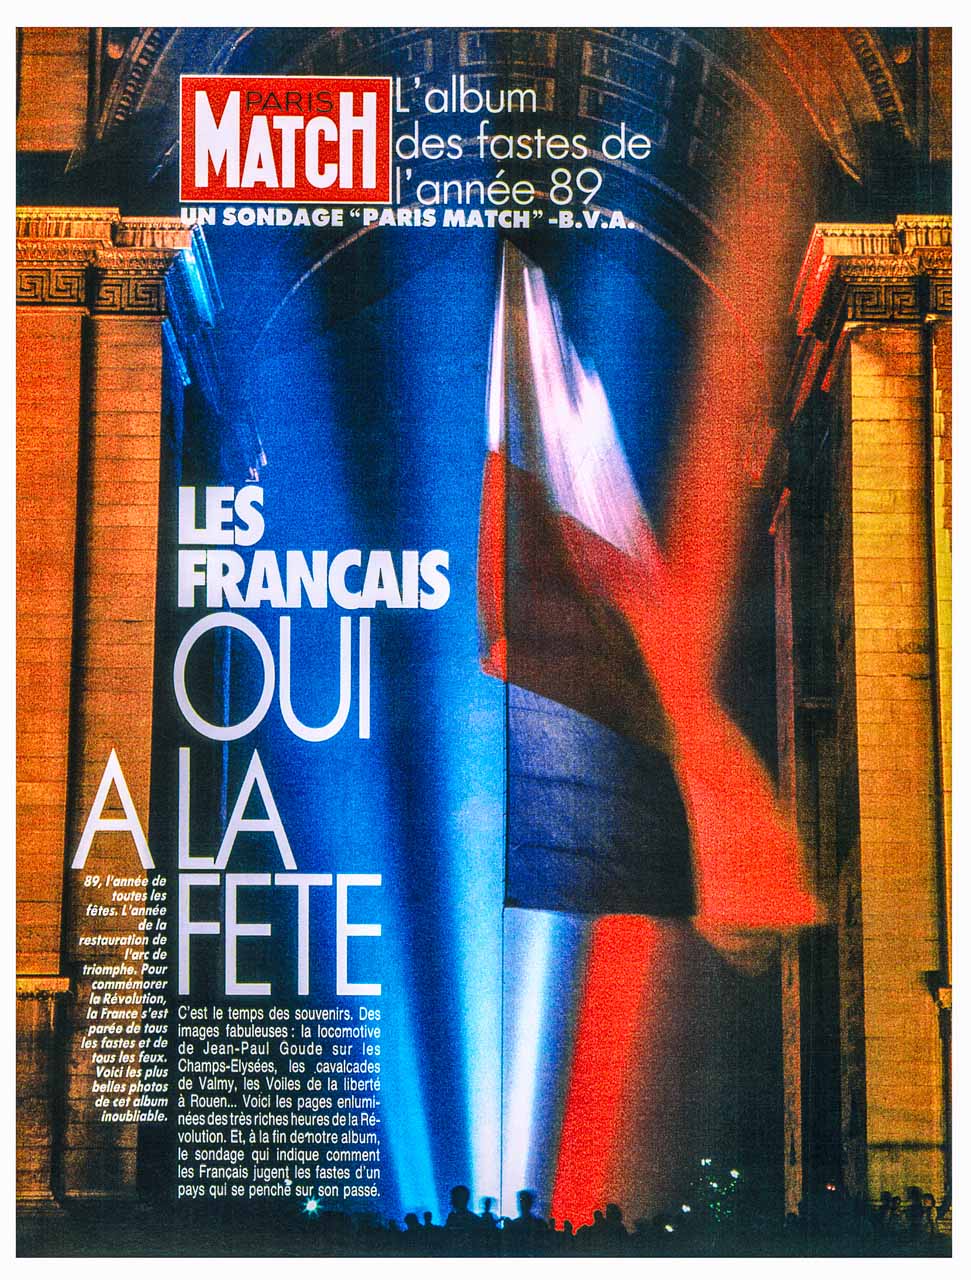 Publication dans Paris Match. Pleine page d'ouverture.